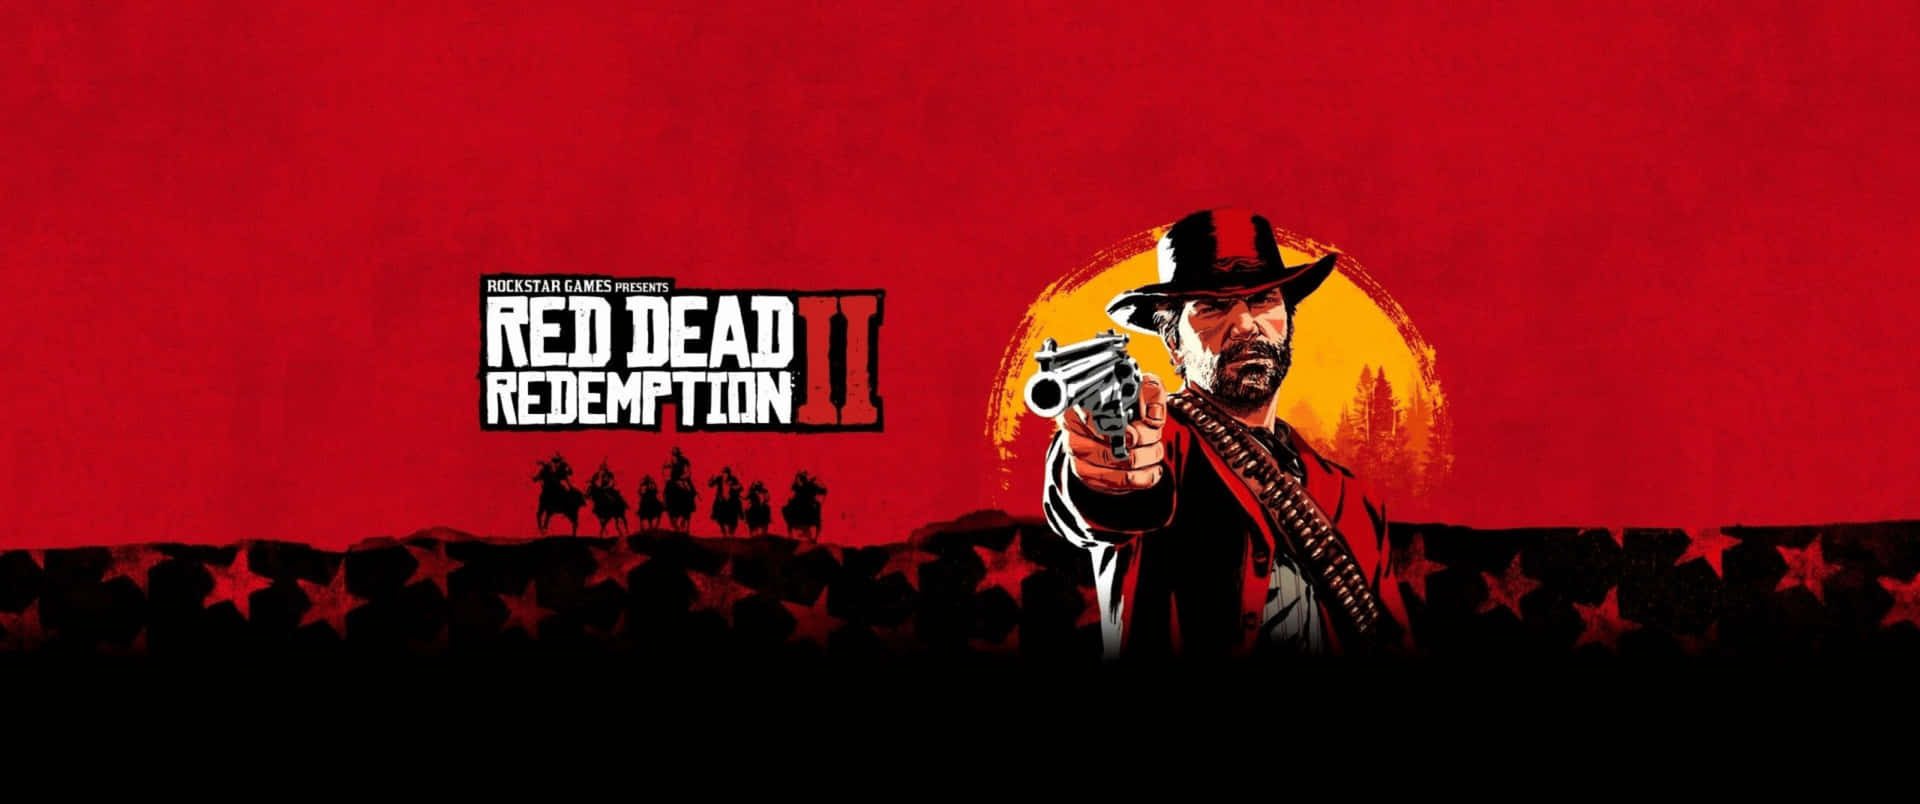 3440x1440p Red Dead Redemption 2 Background Gun Background